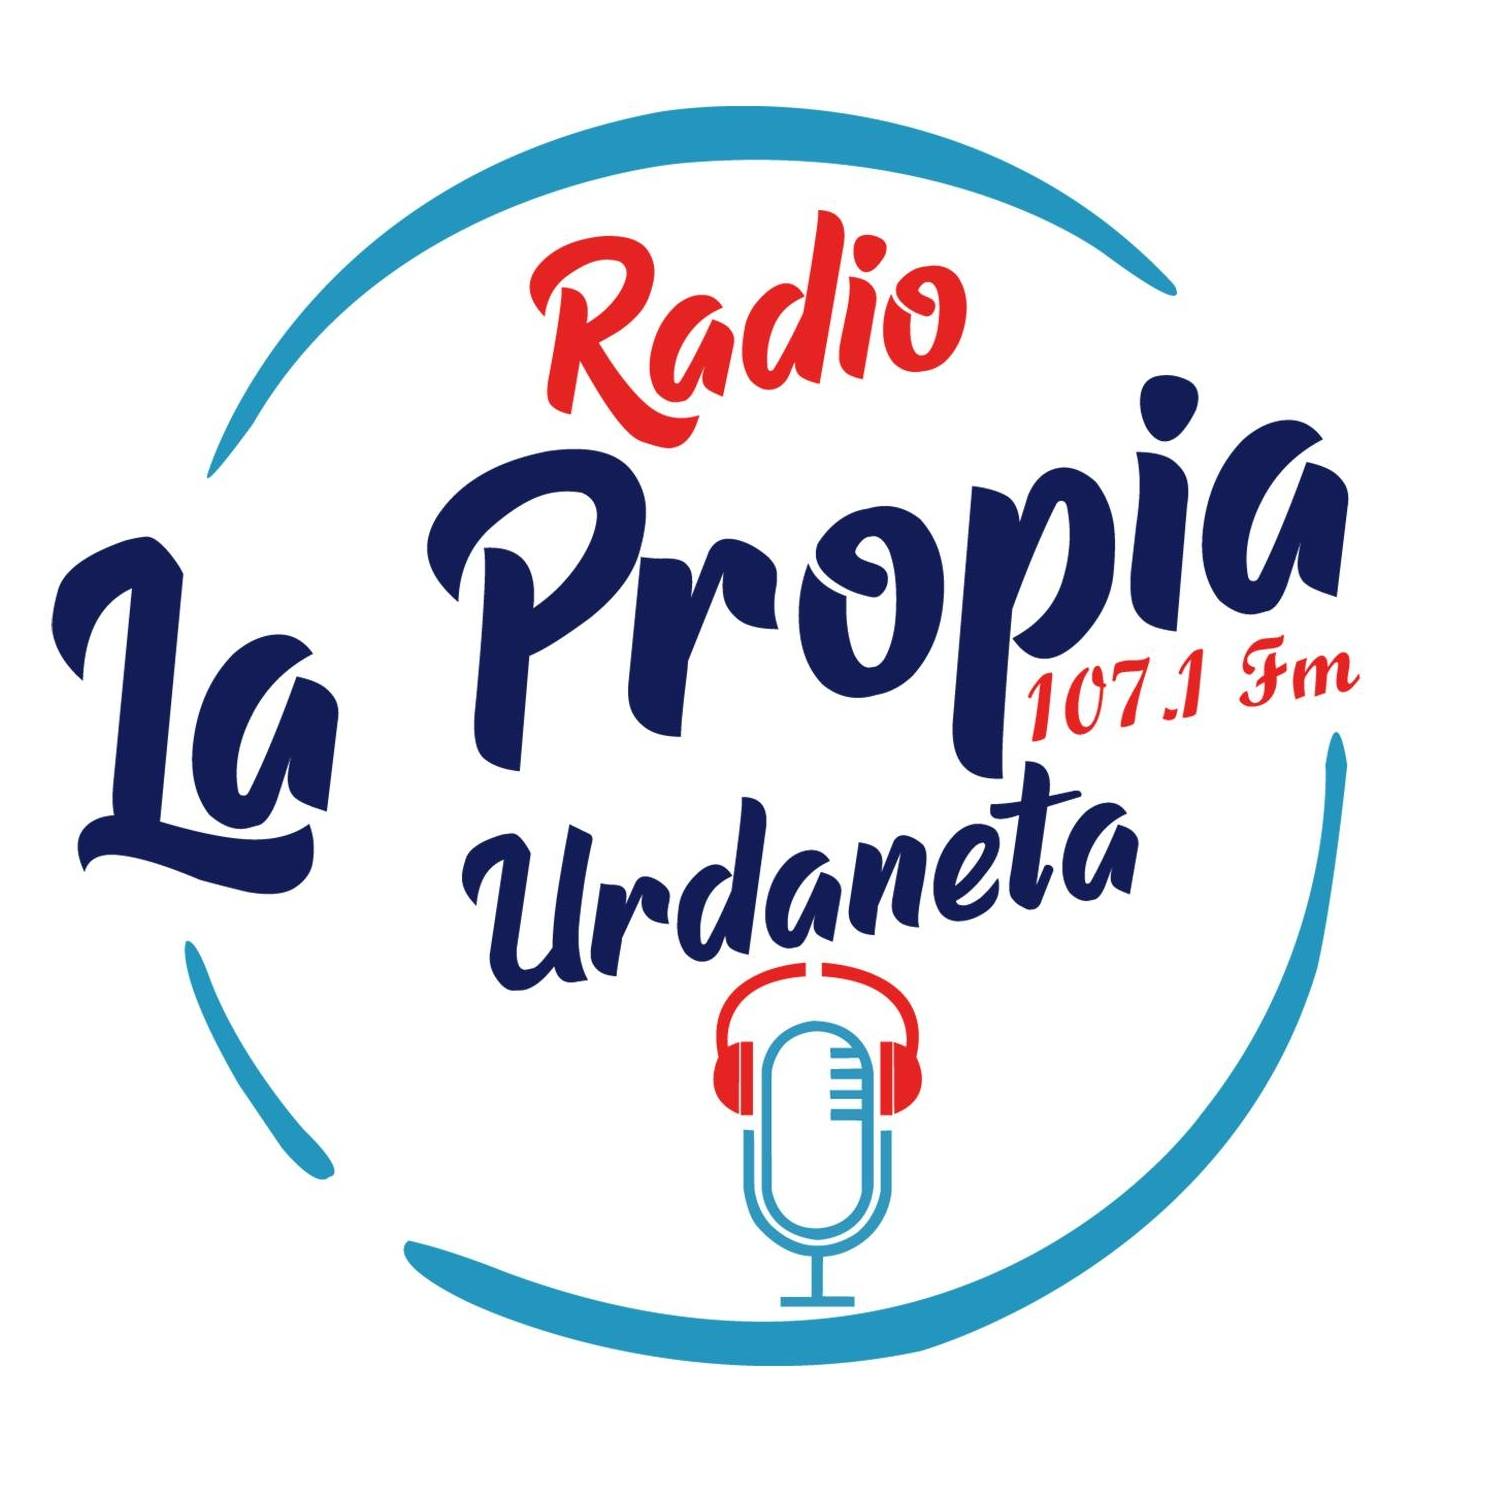 La Propia Radio